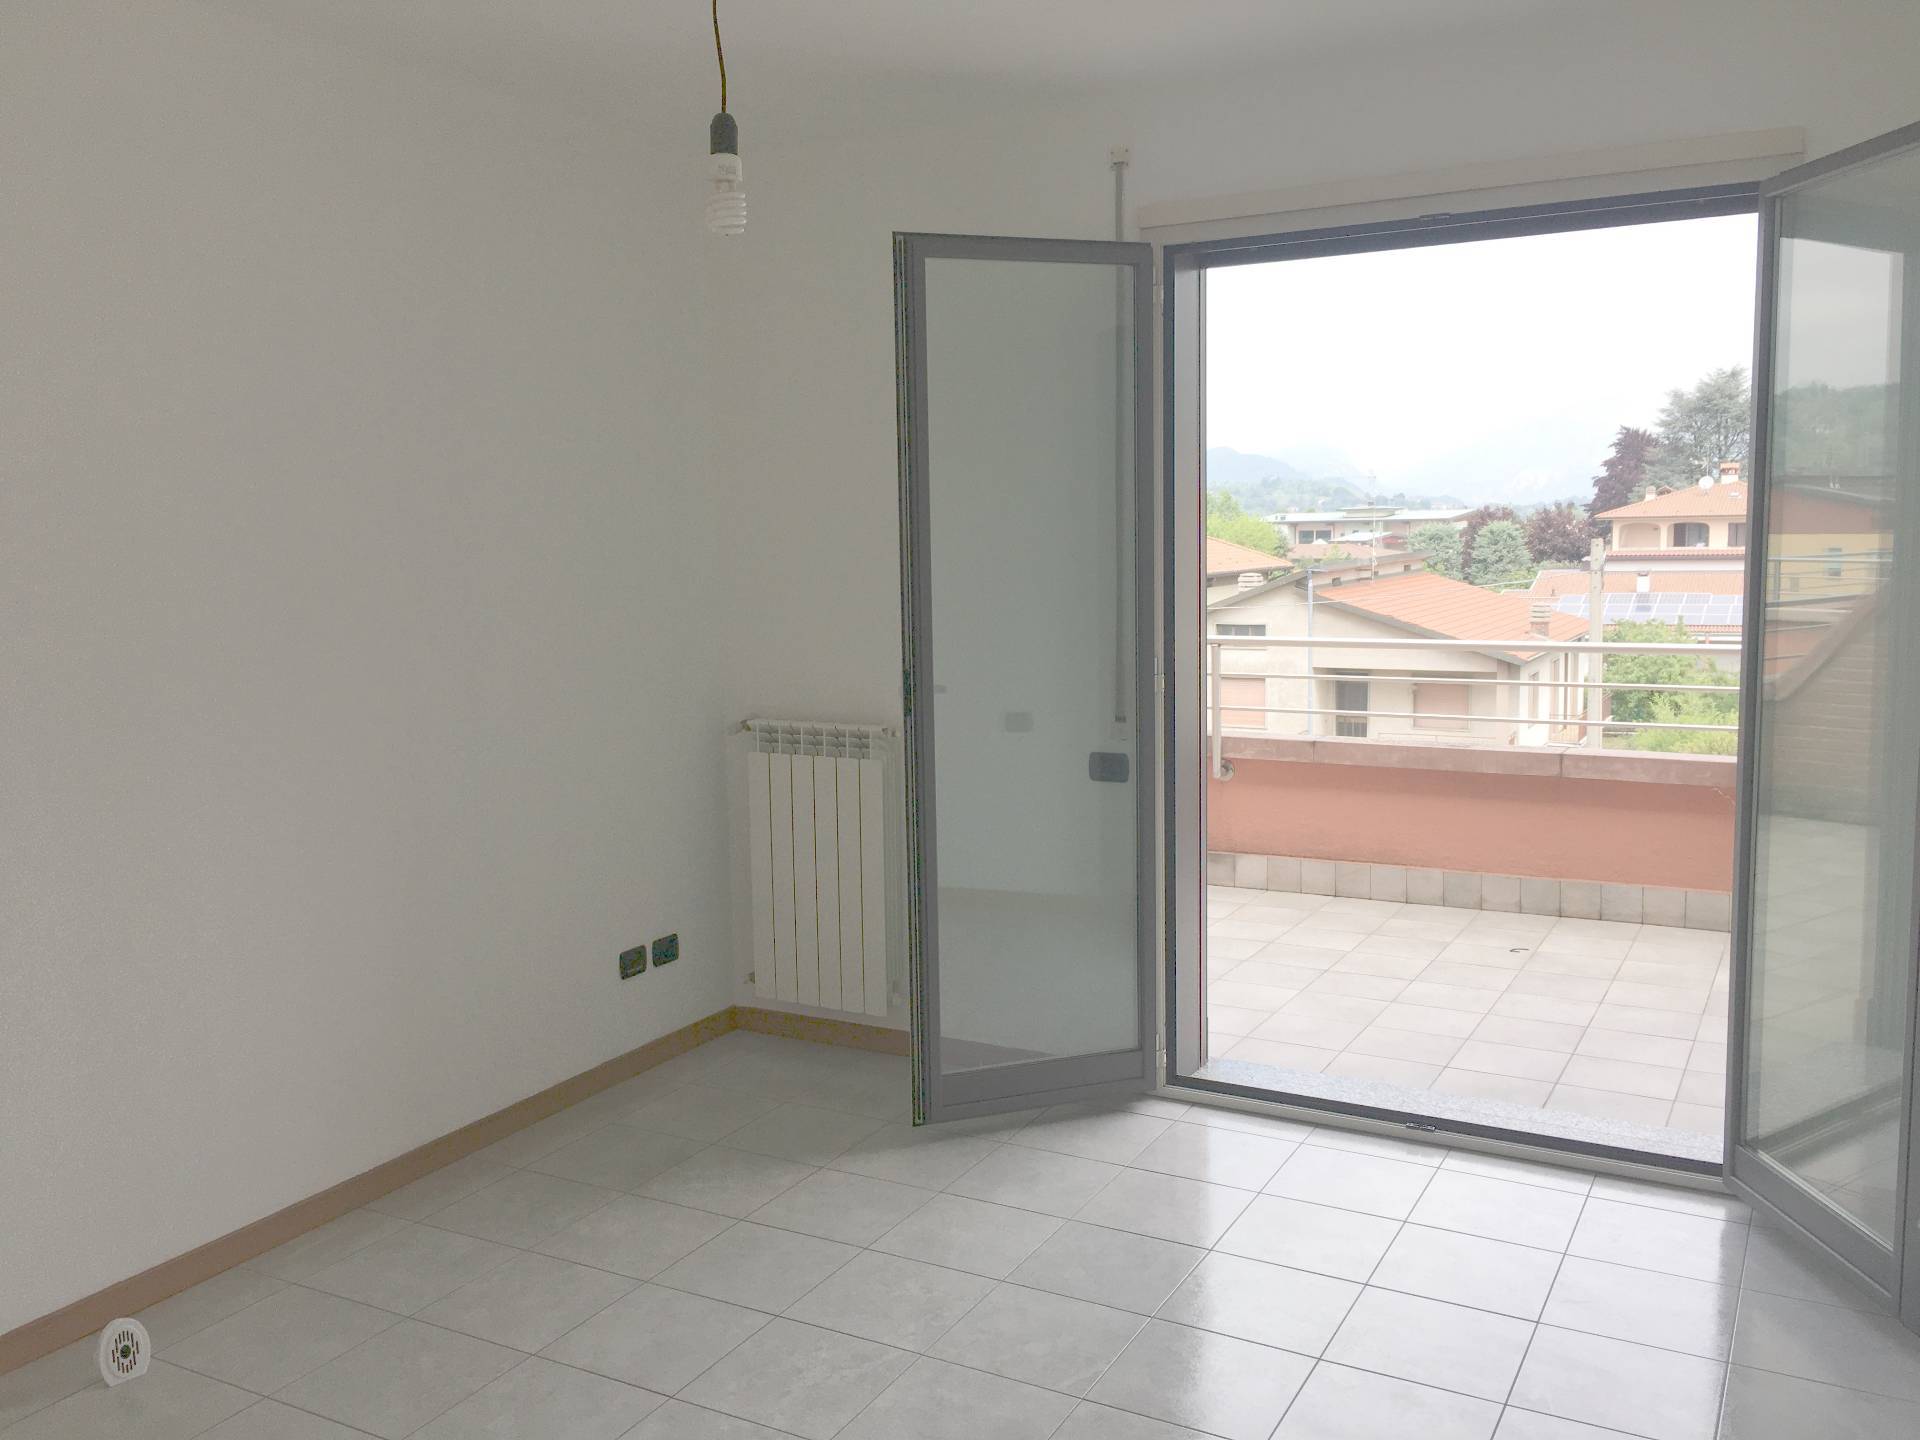 Appartamento in vendita a Villa d'Adda, 1 locali, prezzo € 69.000 | PortaleAgenzieImmobiliari.it